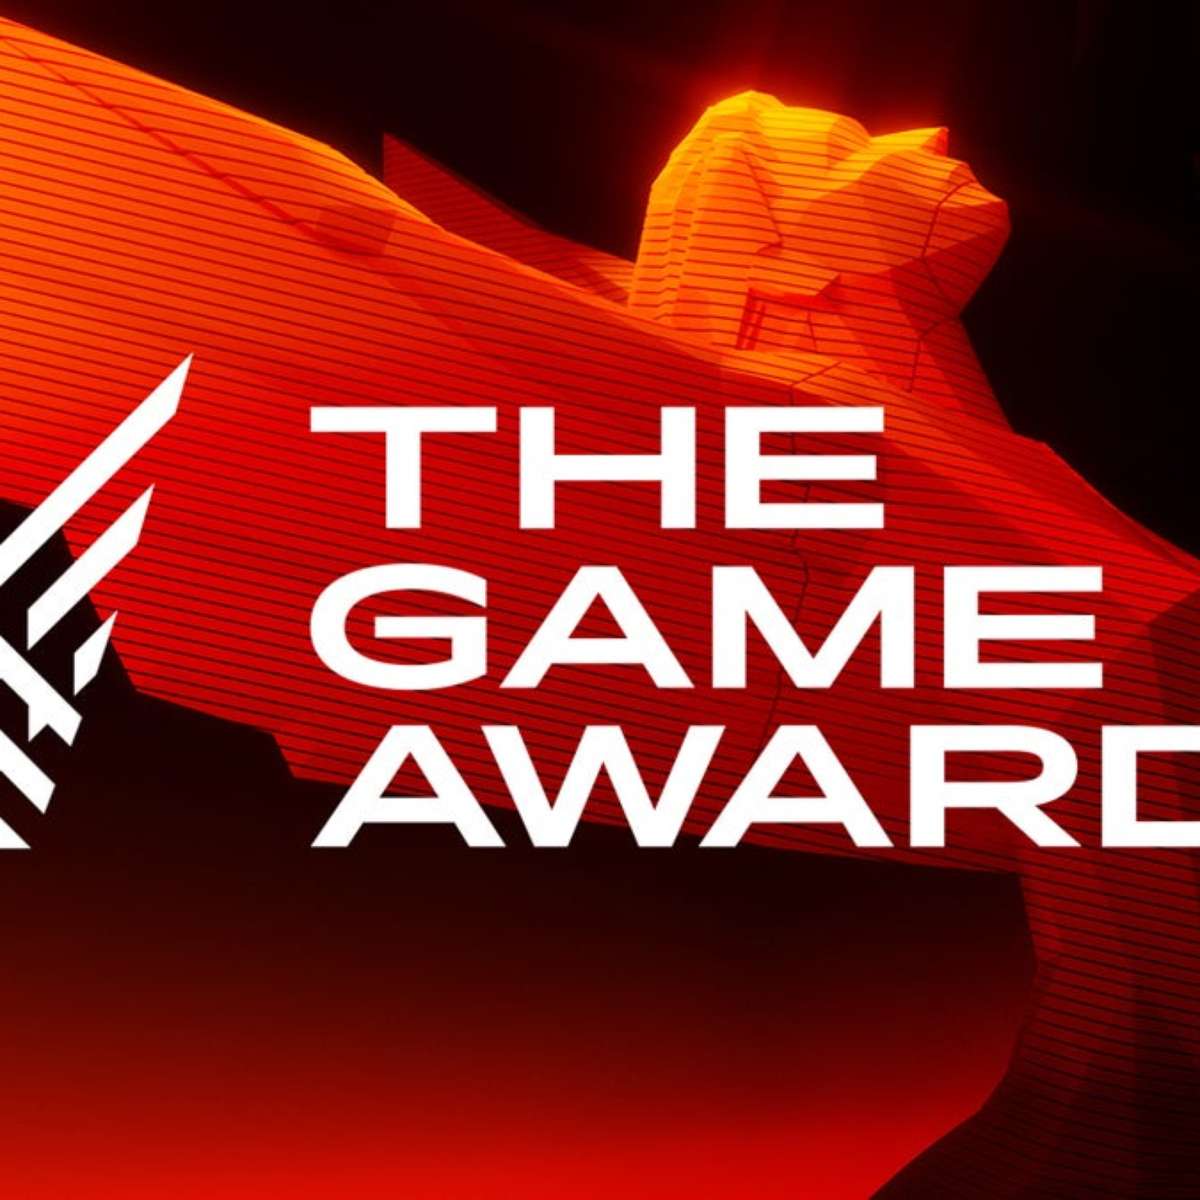 Confira a lista dos jogos indicados ao Game Awards 2020 - Olhar